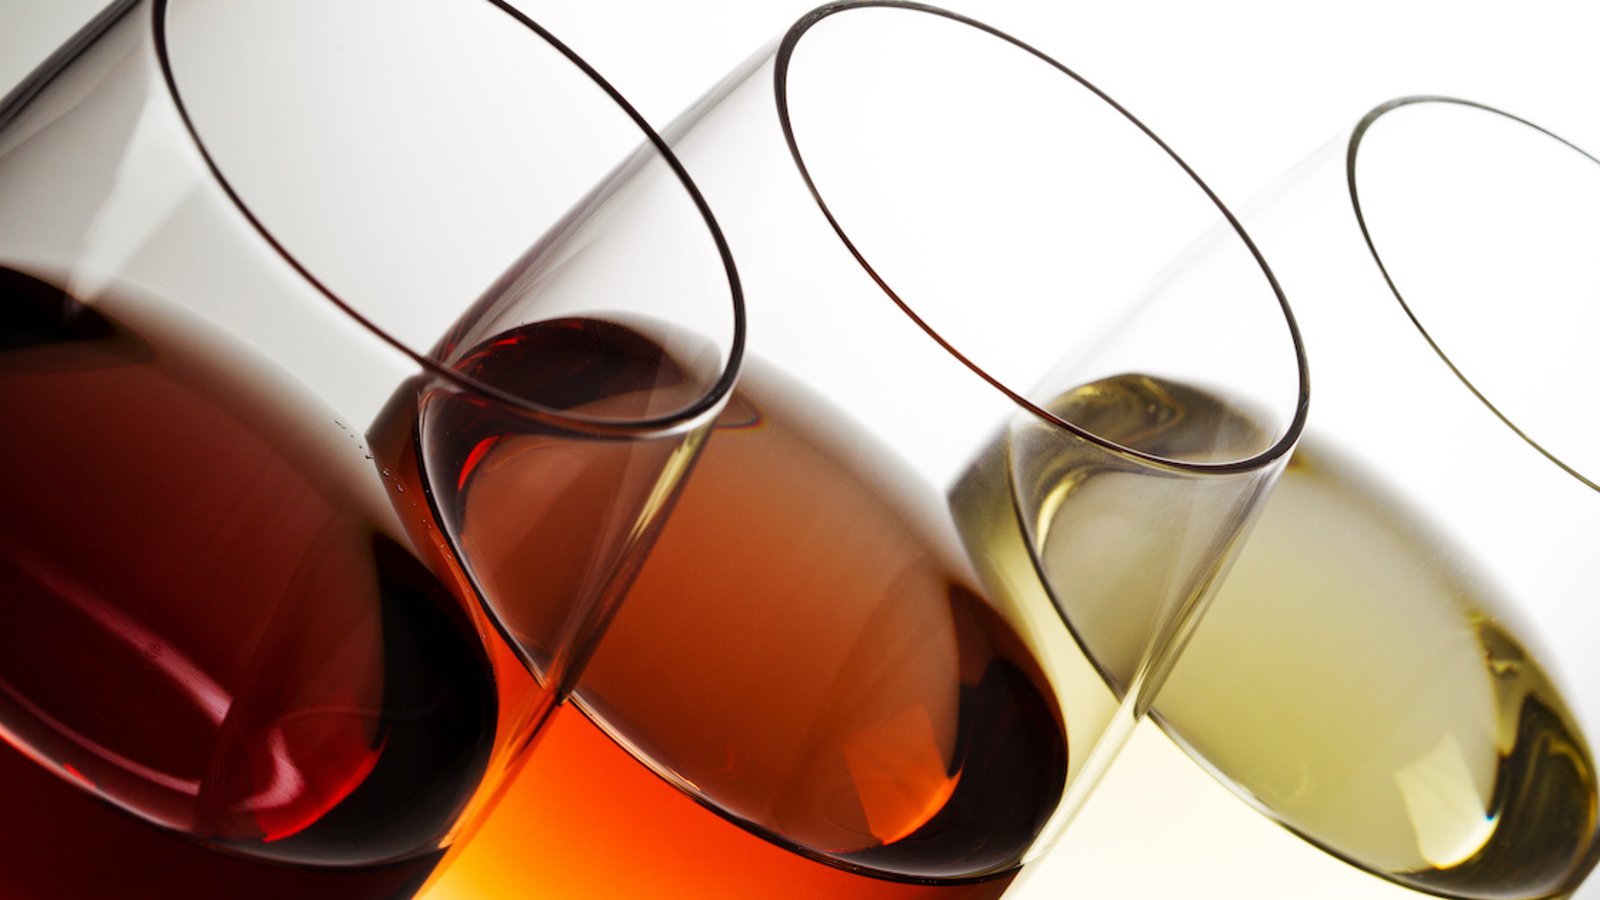 Voici une autre étude qui plaira aux amateurs de vin!